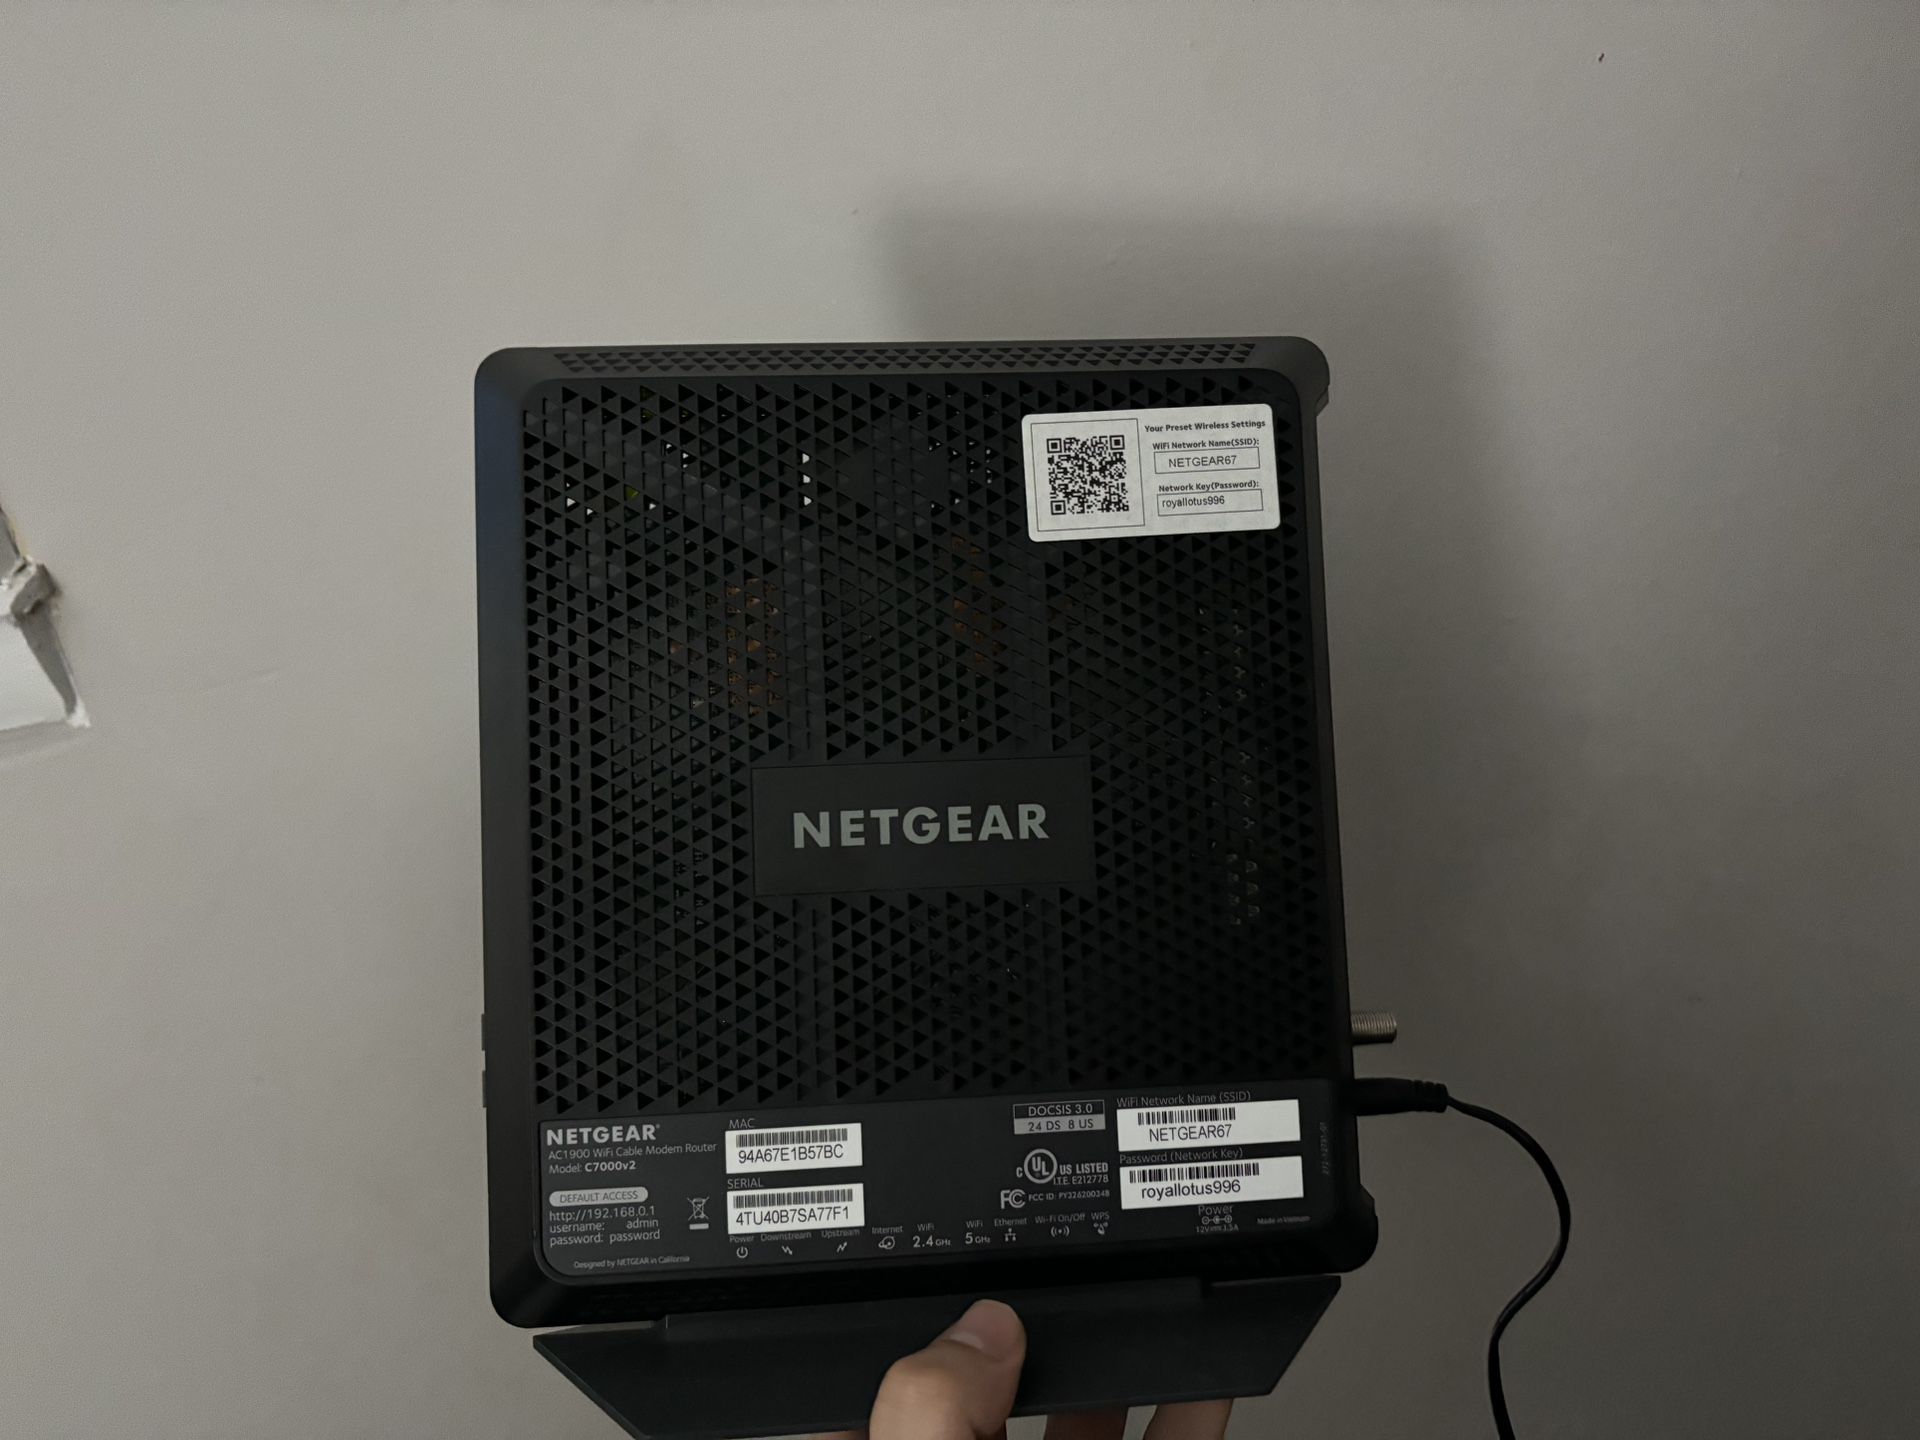 Netgear Nighthawk modem/router